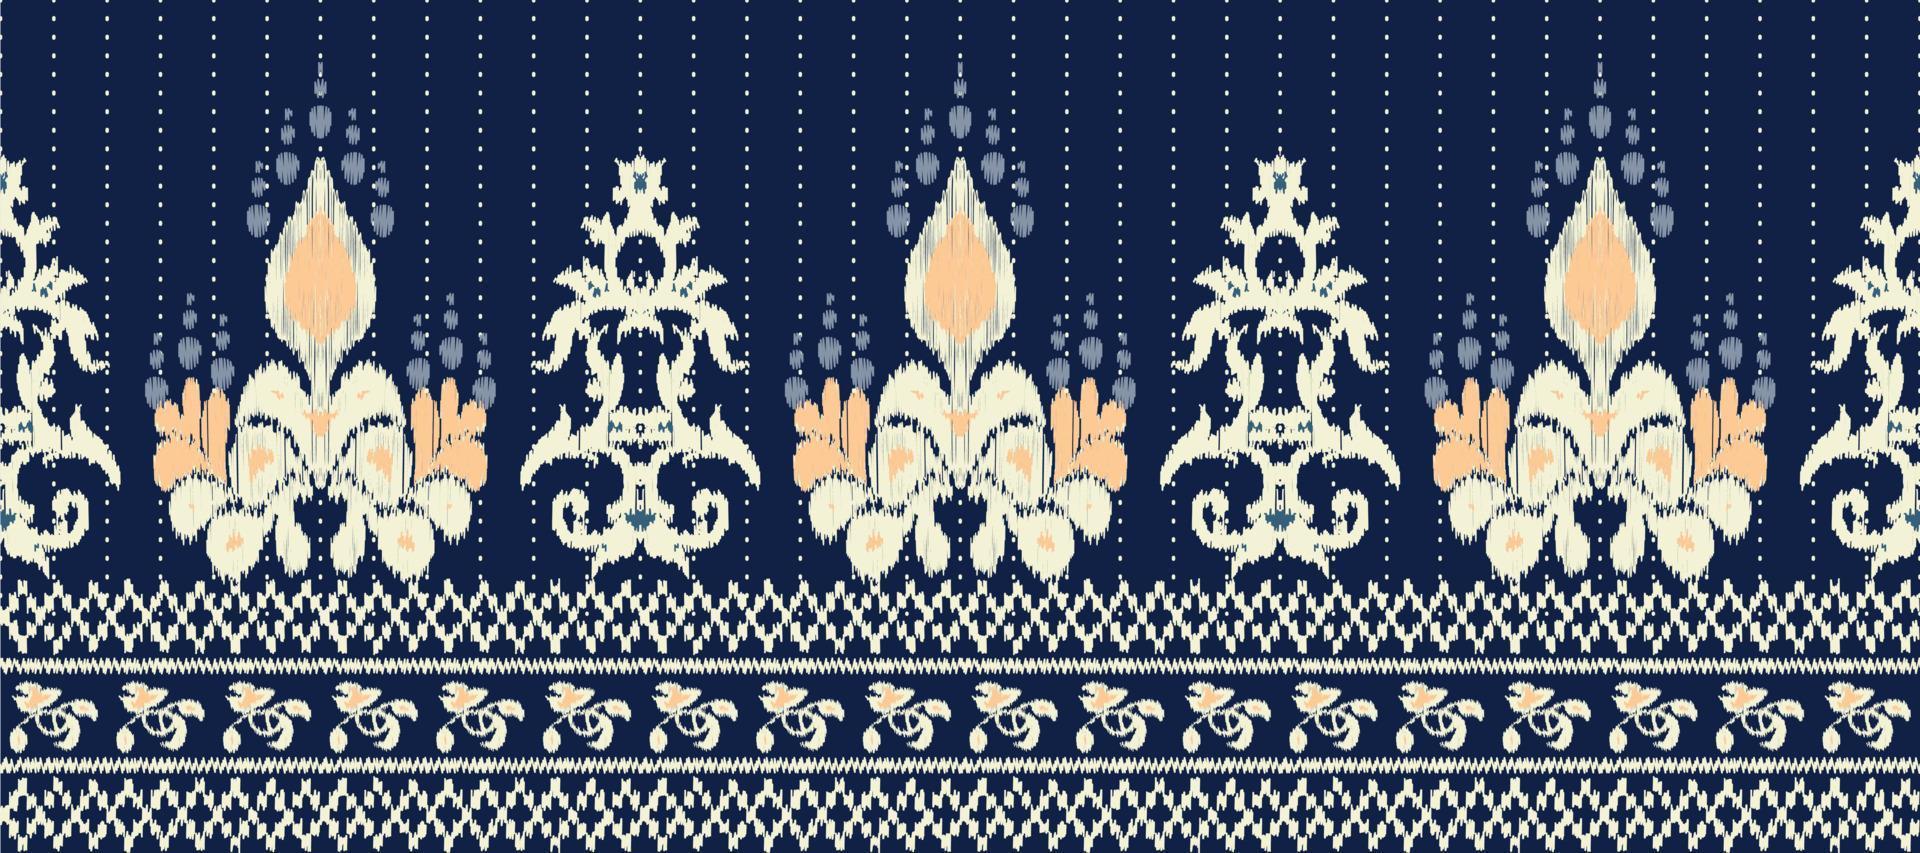 africano ikat floral cachemir bordado antecedentes. geométrico étnico oriental modelo tradicional. ikat flor estilo resumen vector ilustración. diseño para impresión textura,tela,sari,sari,alfombra.